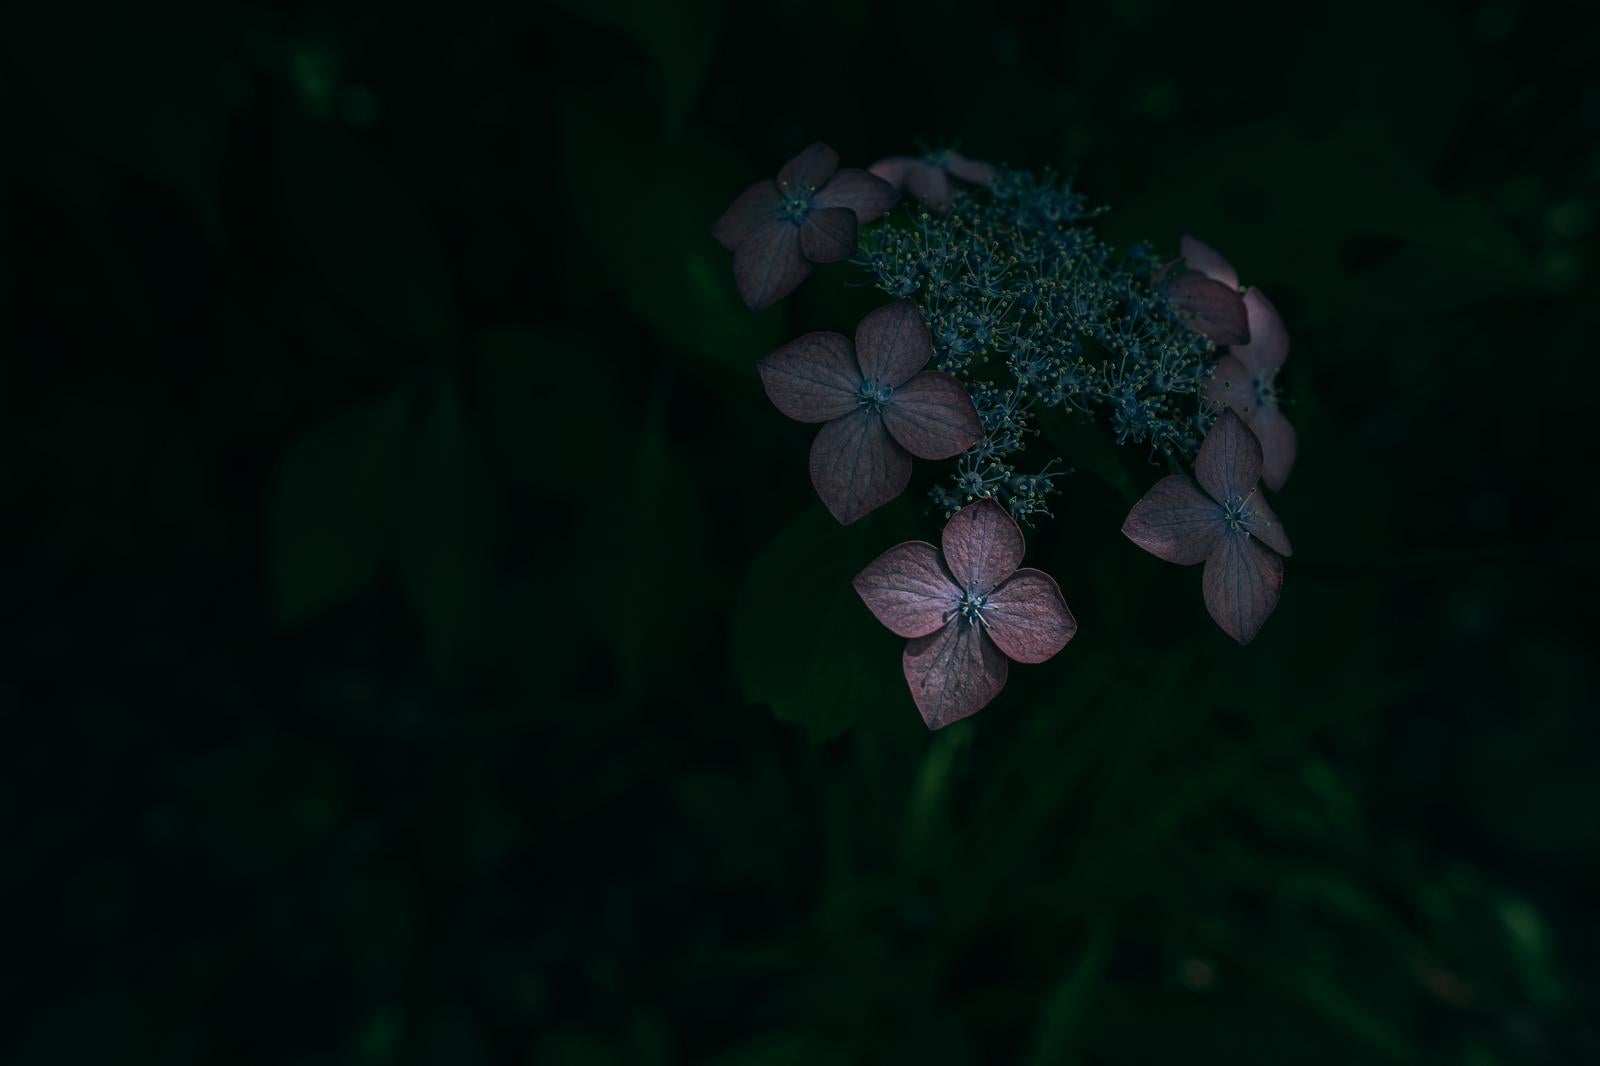 「暗闇に浮かぶ青紫のアジサイ」の写真